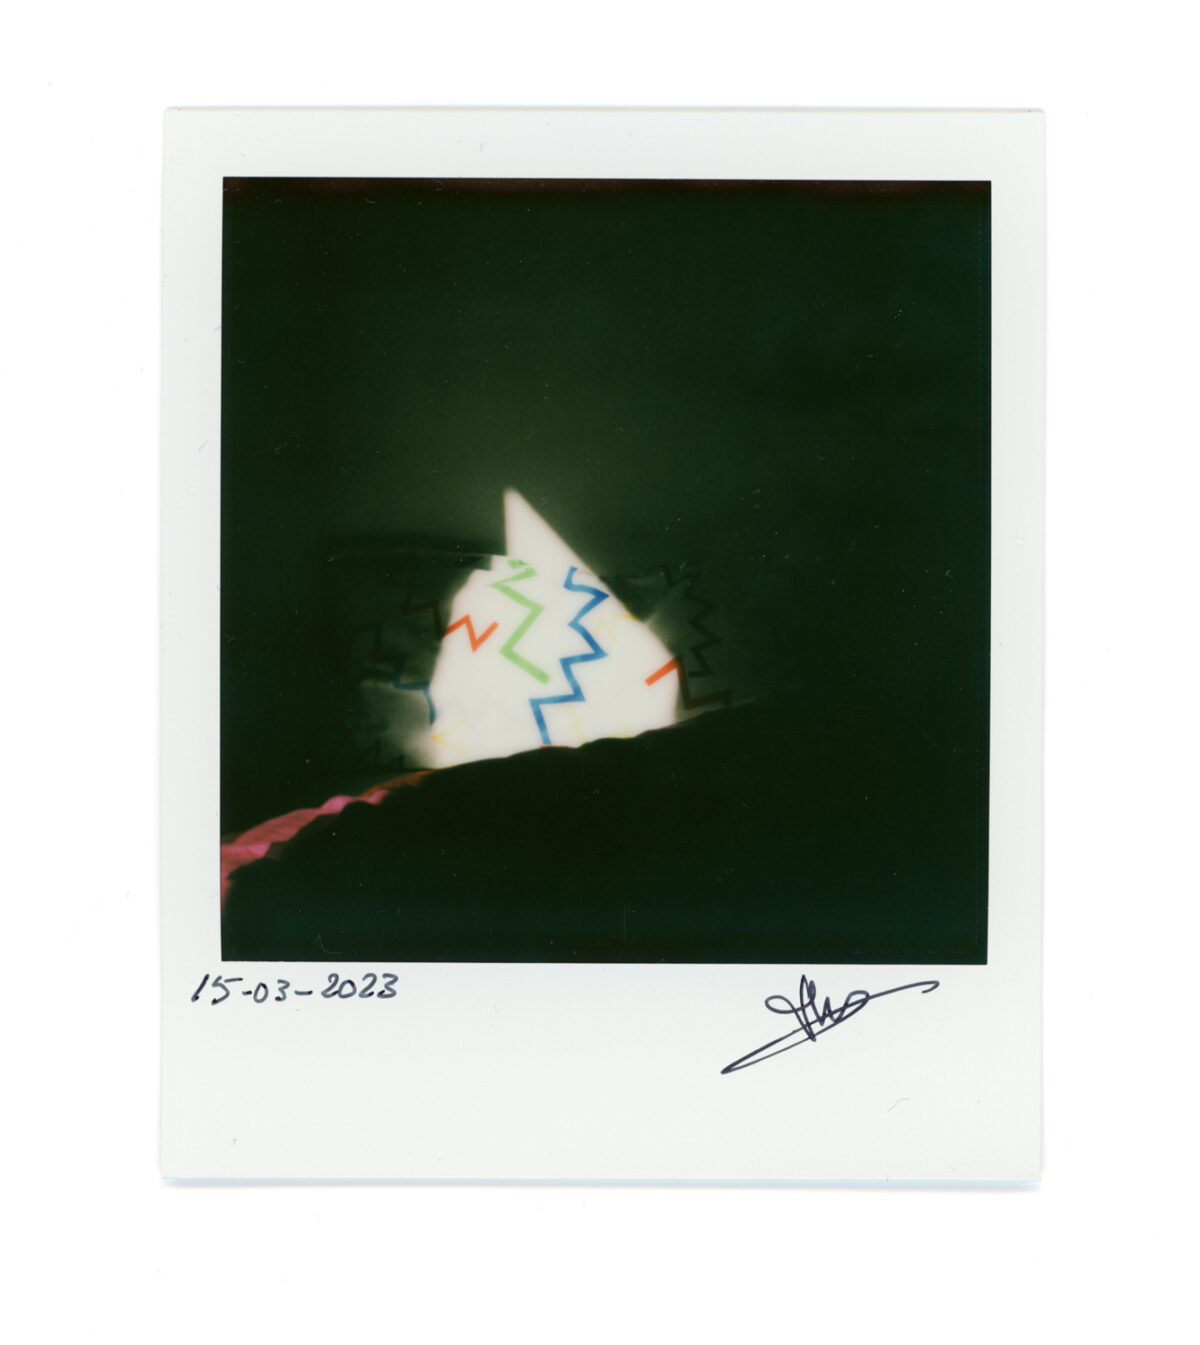 Polaroid-15032023